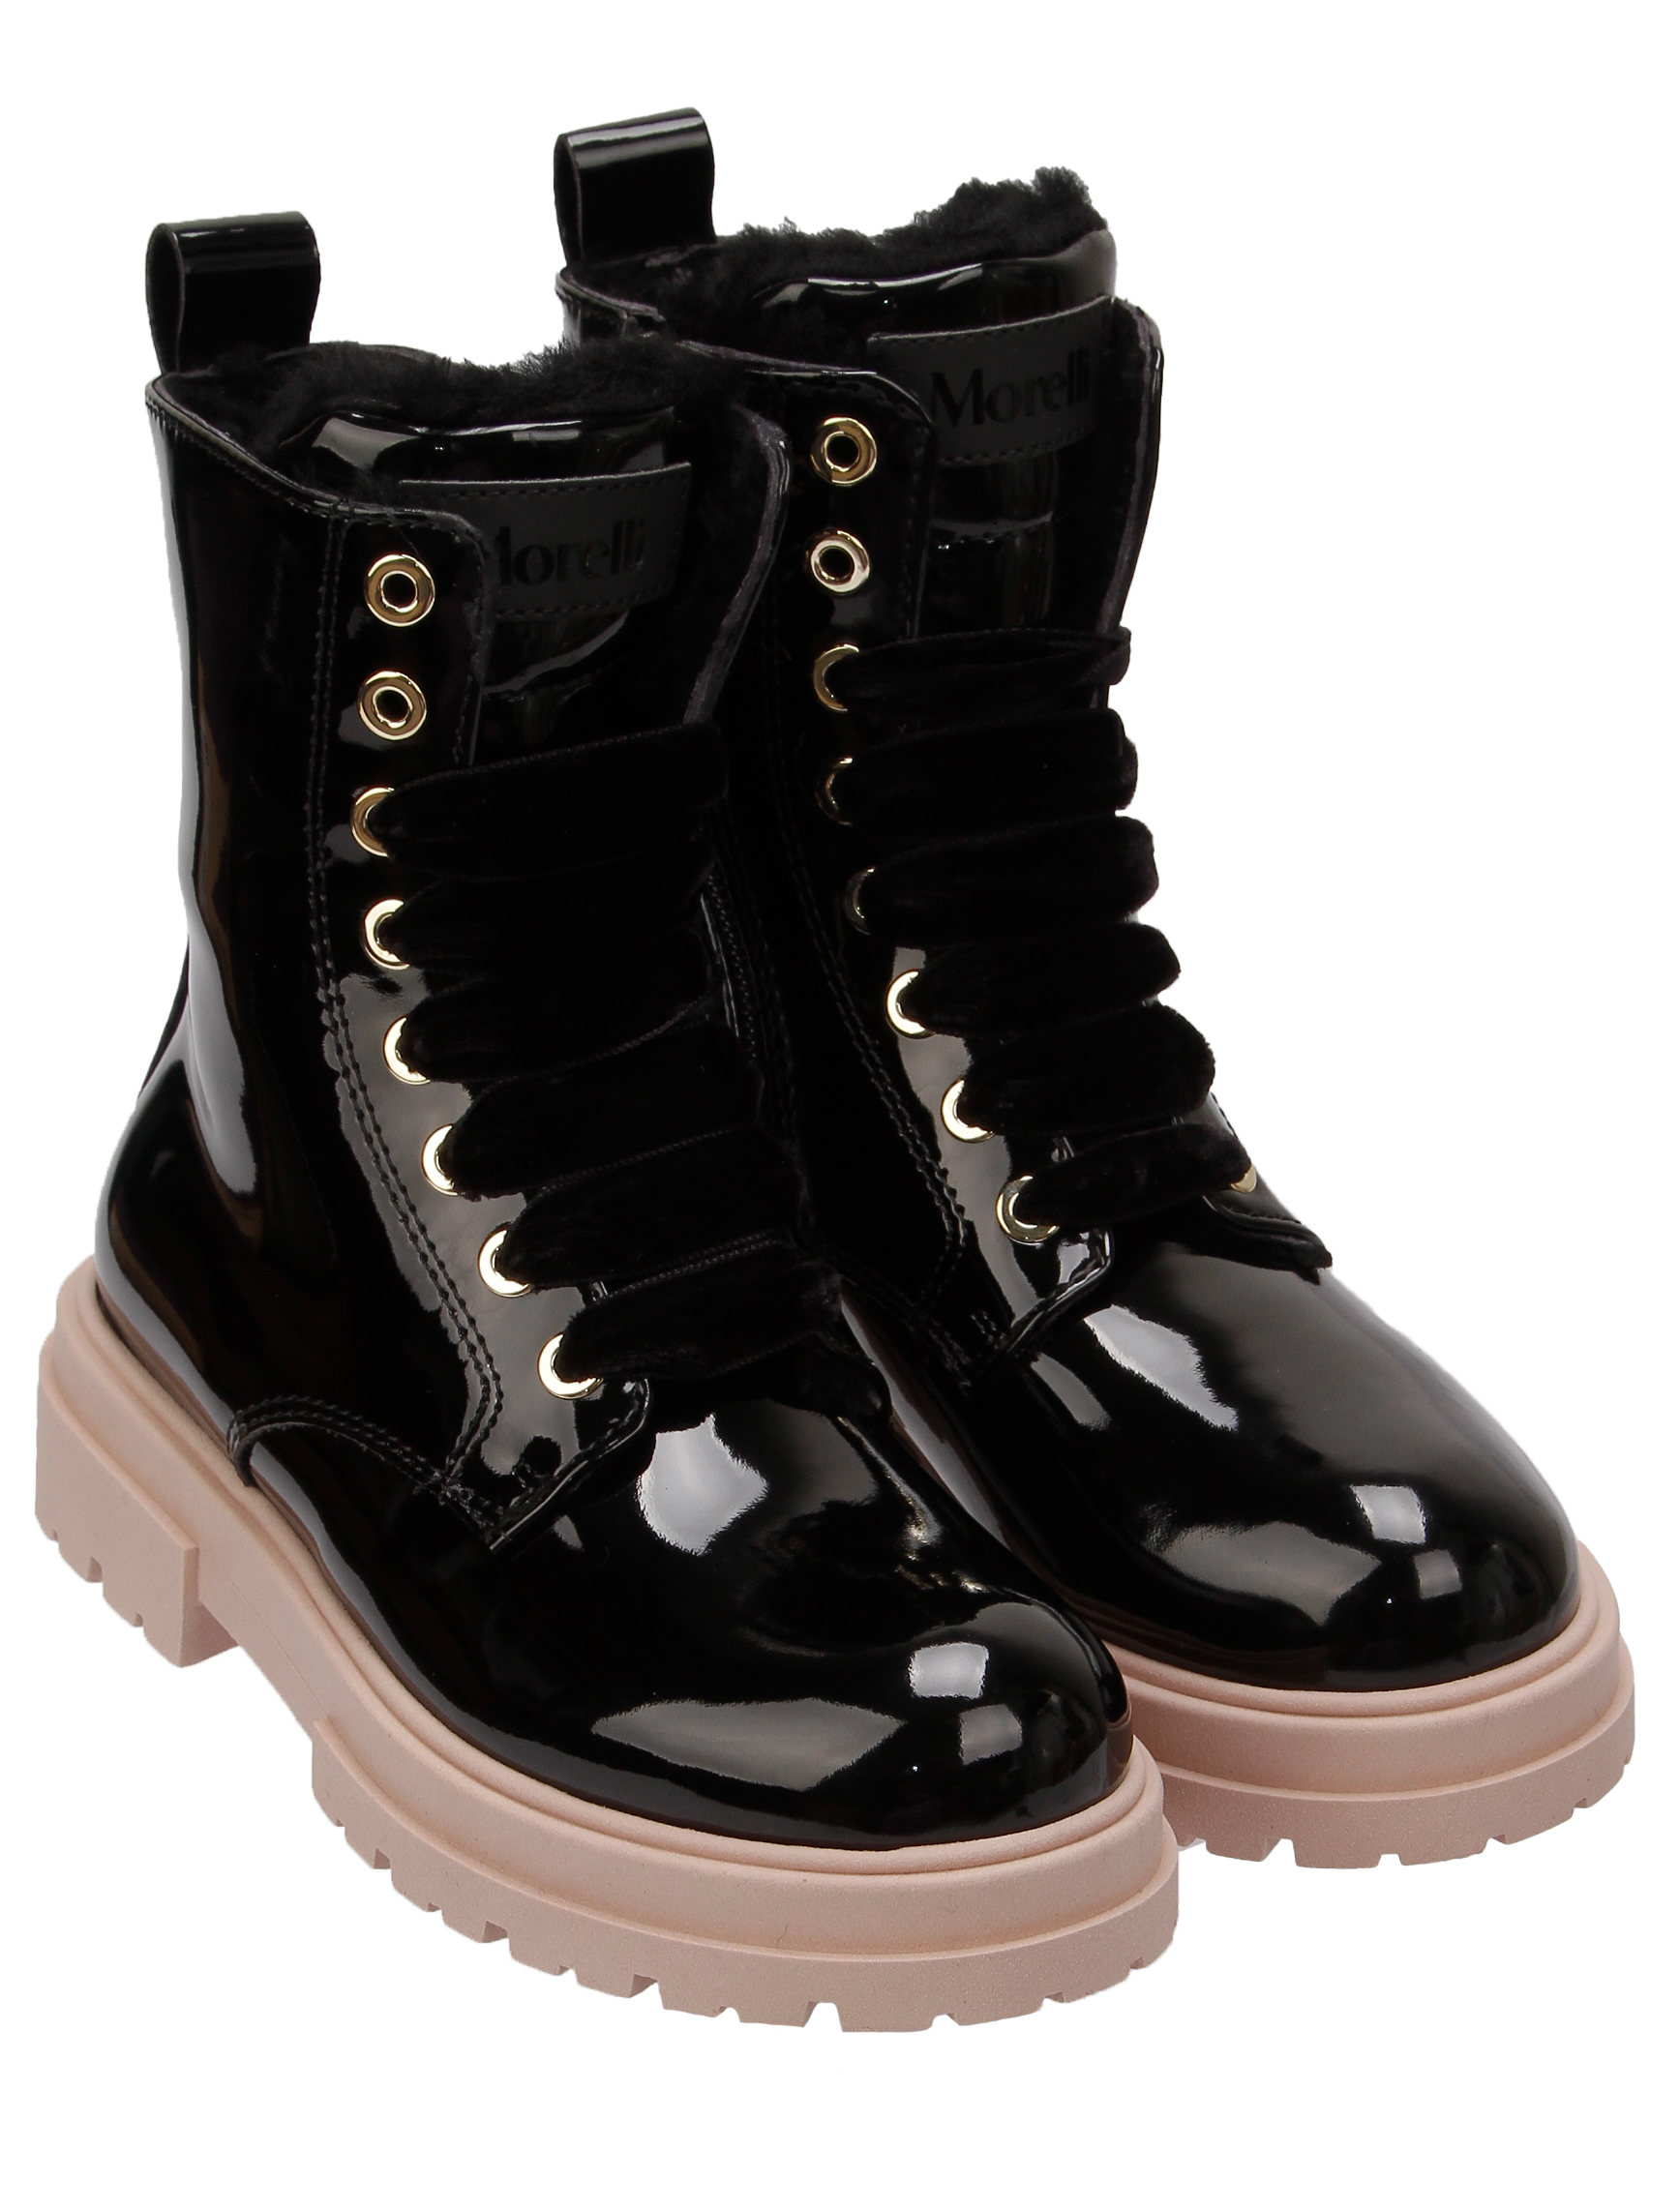 Ботинки Morelli 2493017, цвет черный, размер 32